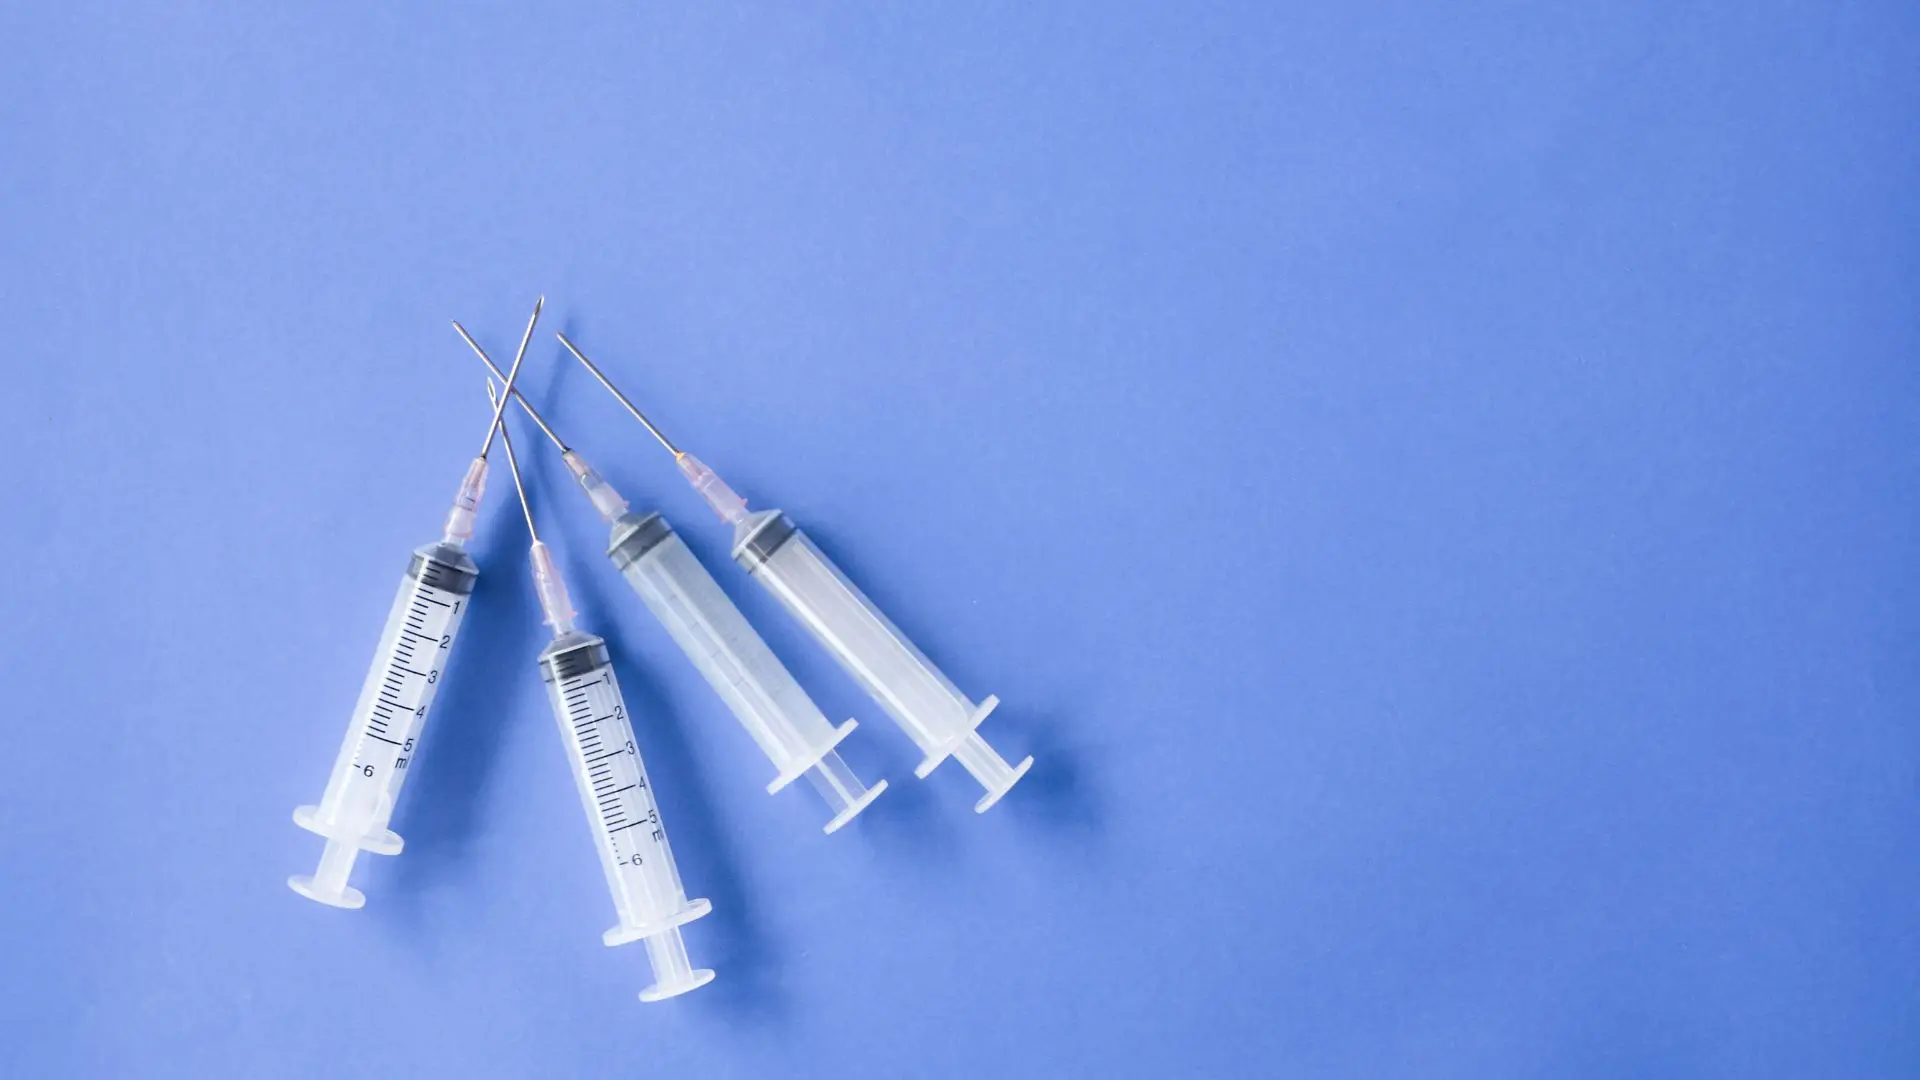 Nova vacina pode ser eficaz contra coronavírus que ainda não surgiram